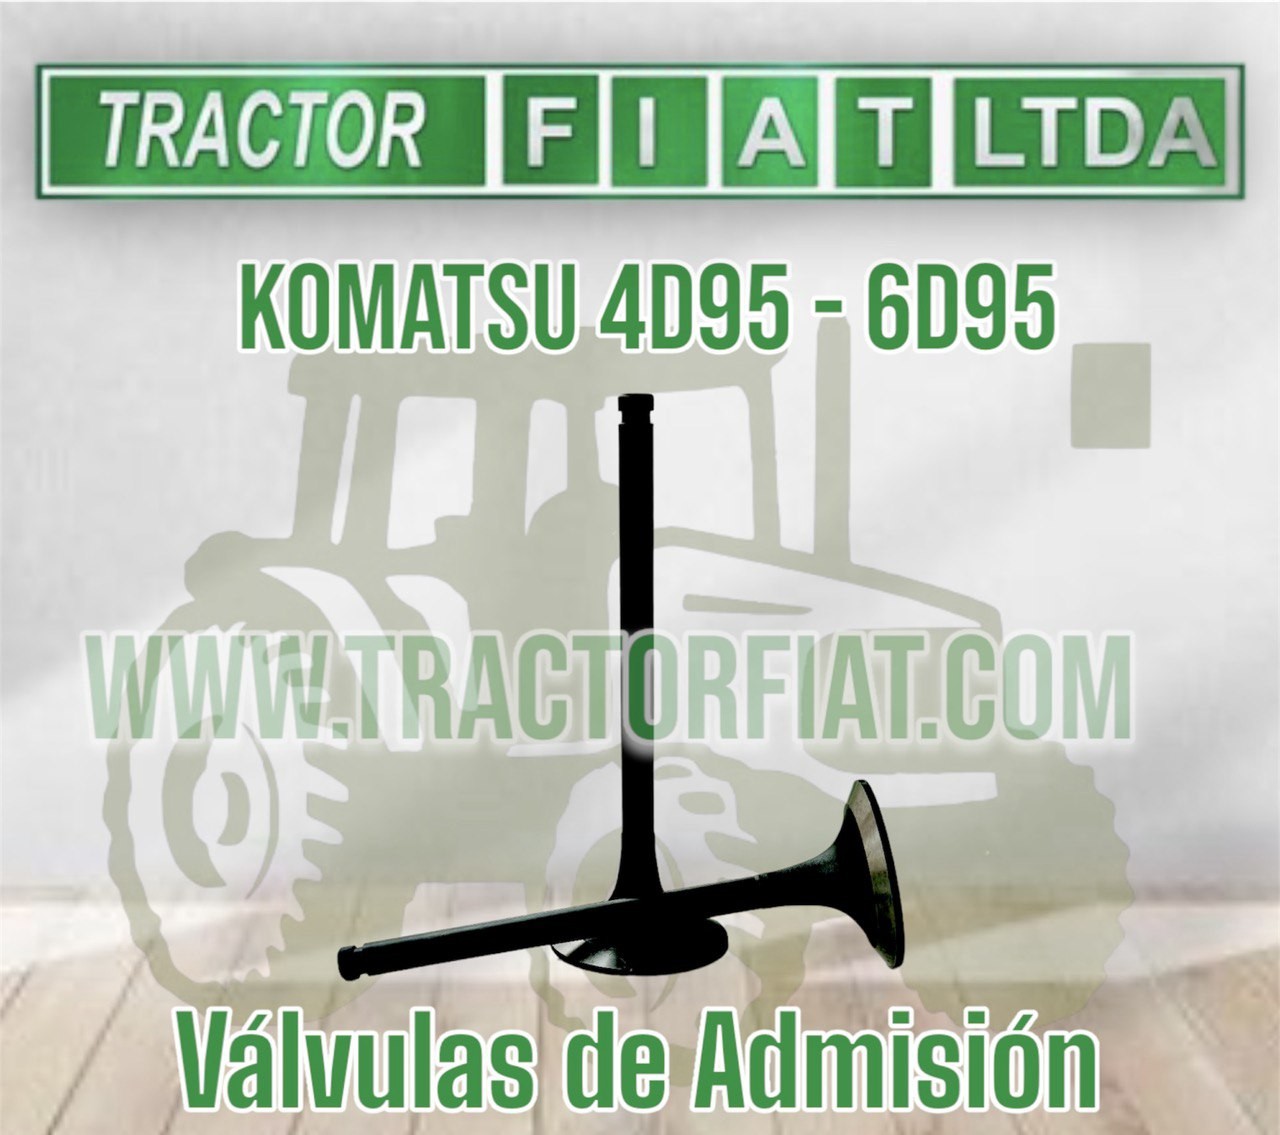 VALVULAS DE ADMISION - MOTOR KOMATSU 6D95/4D95